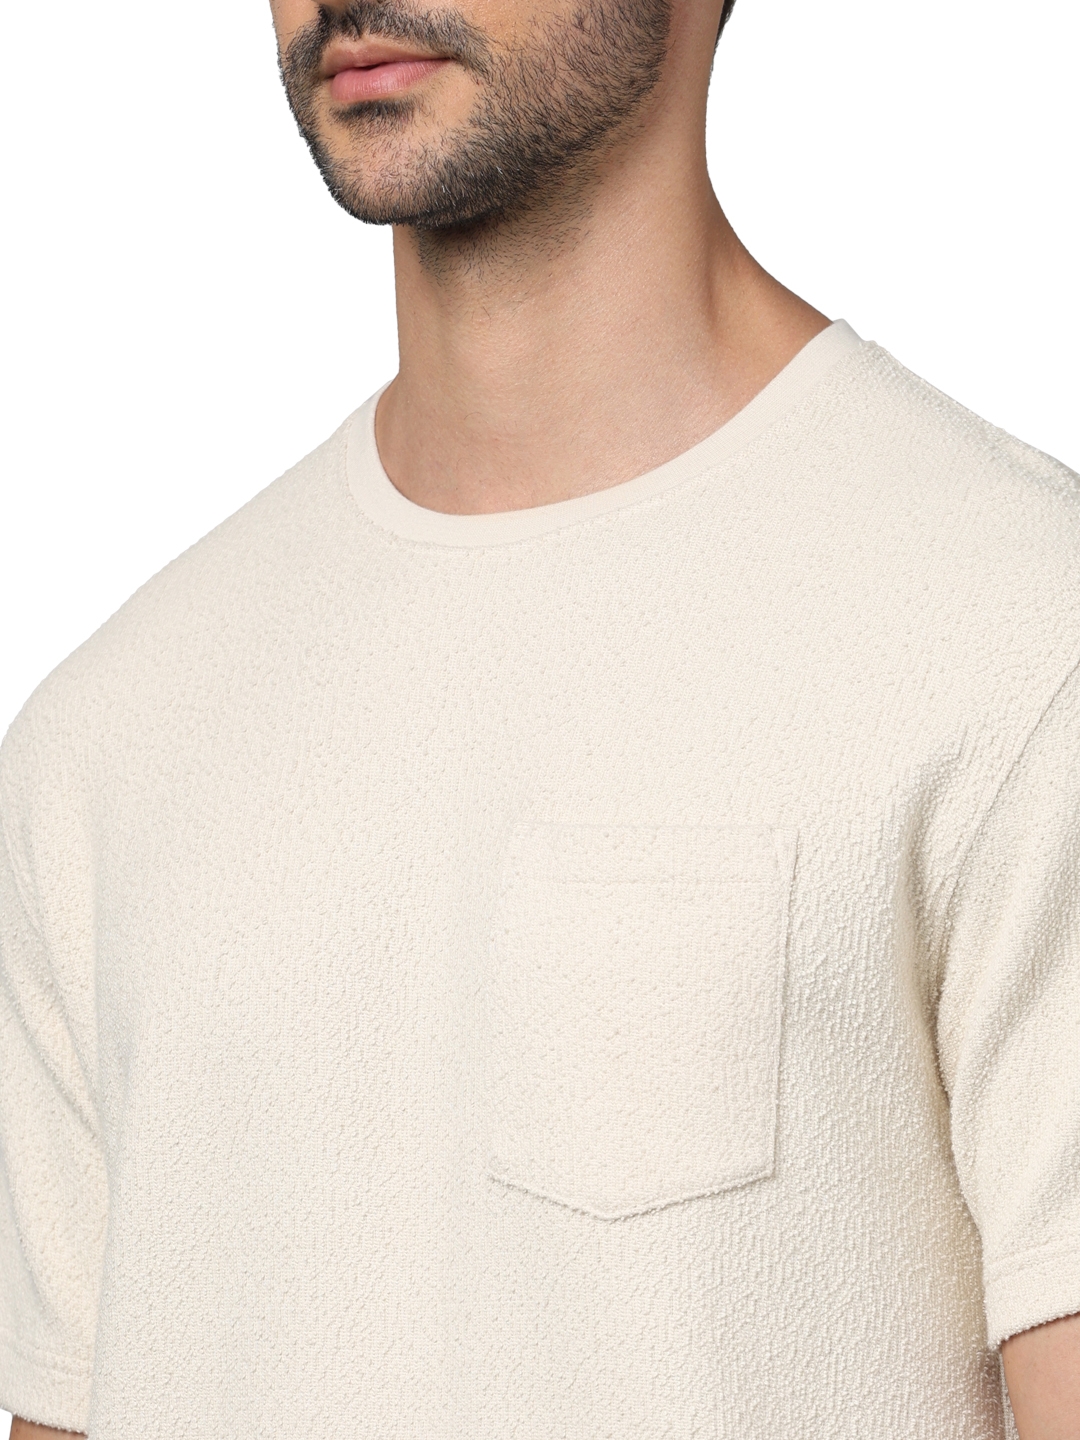 Celio Men Beige Solid Regular Fit Cotton Fashion Tshirts